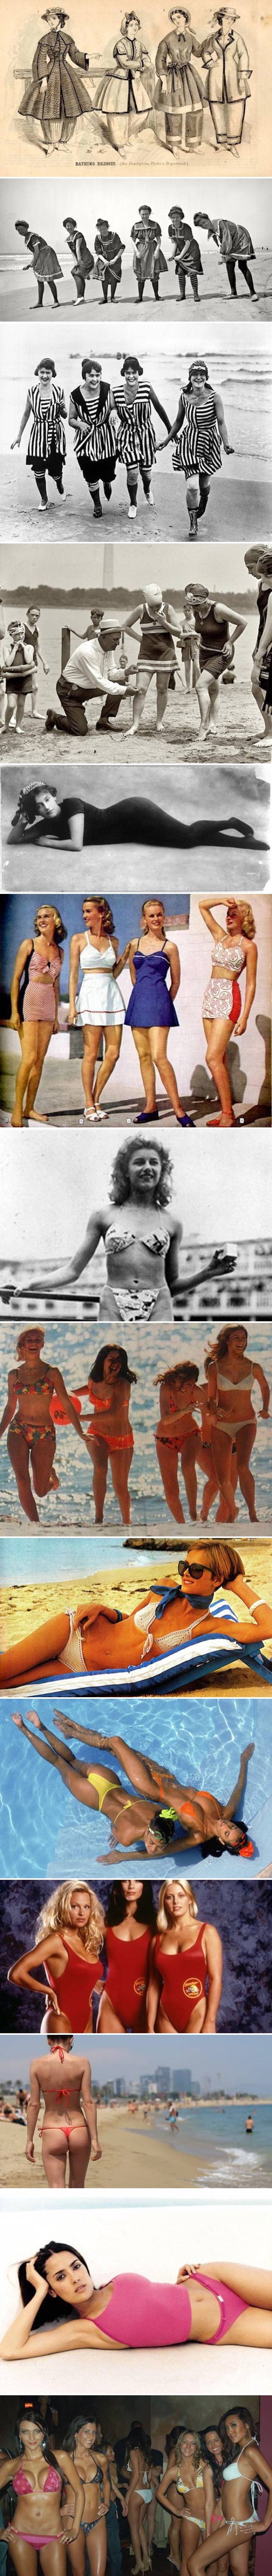 Kupaći kostimi nisu više kao prije, začudit ćete se kad vidite koliko su se mijenjali u zadnjih 200 godina